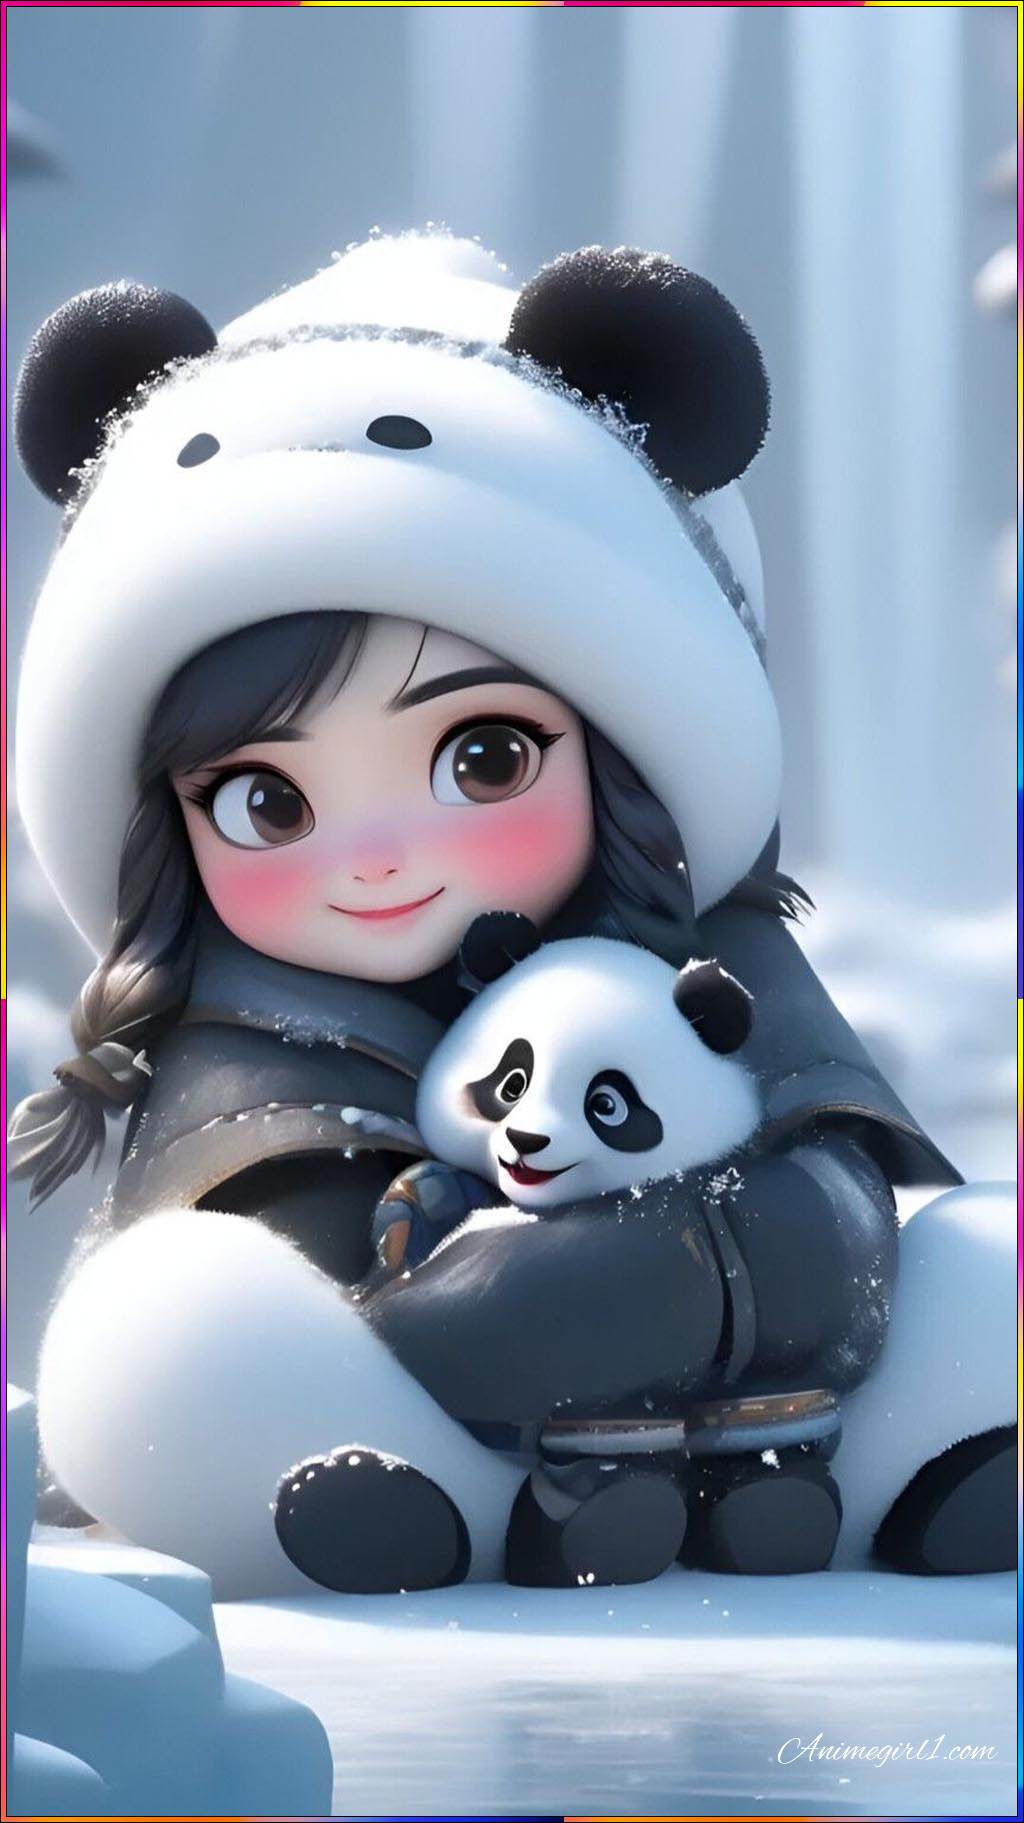 little anime girl with panda